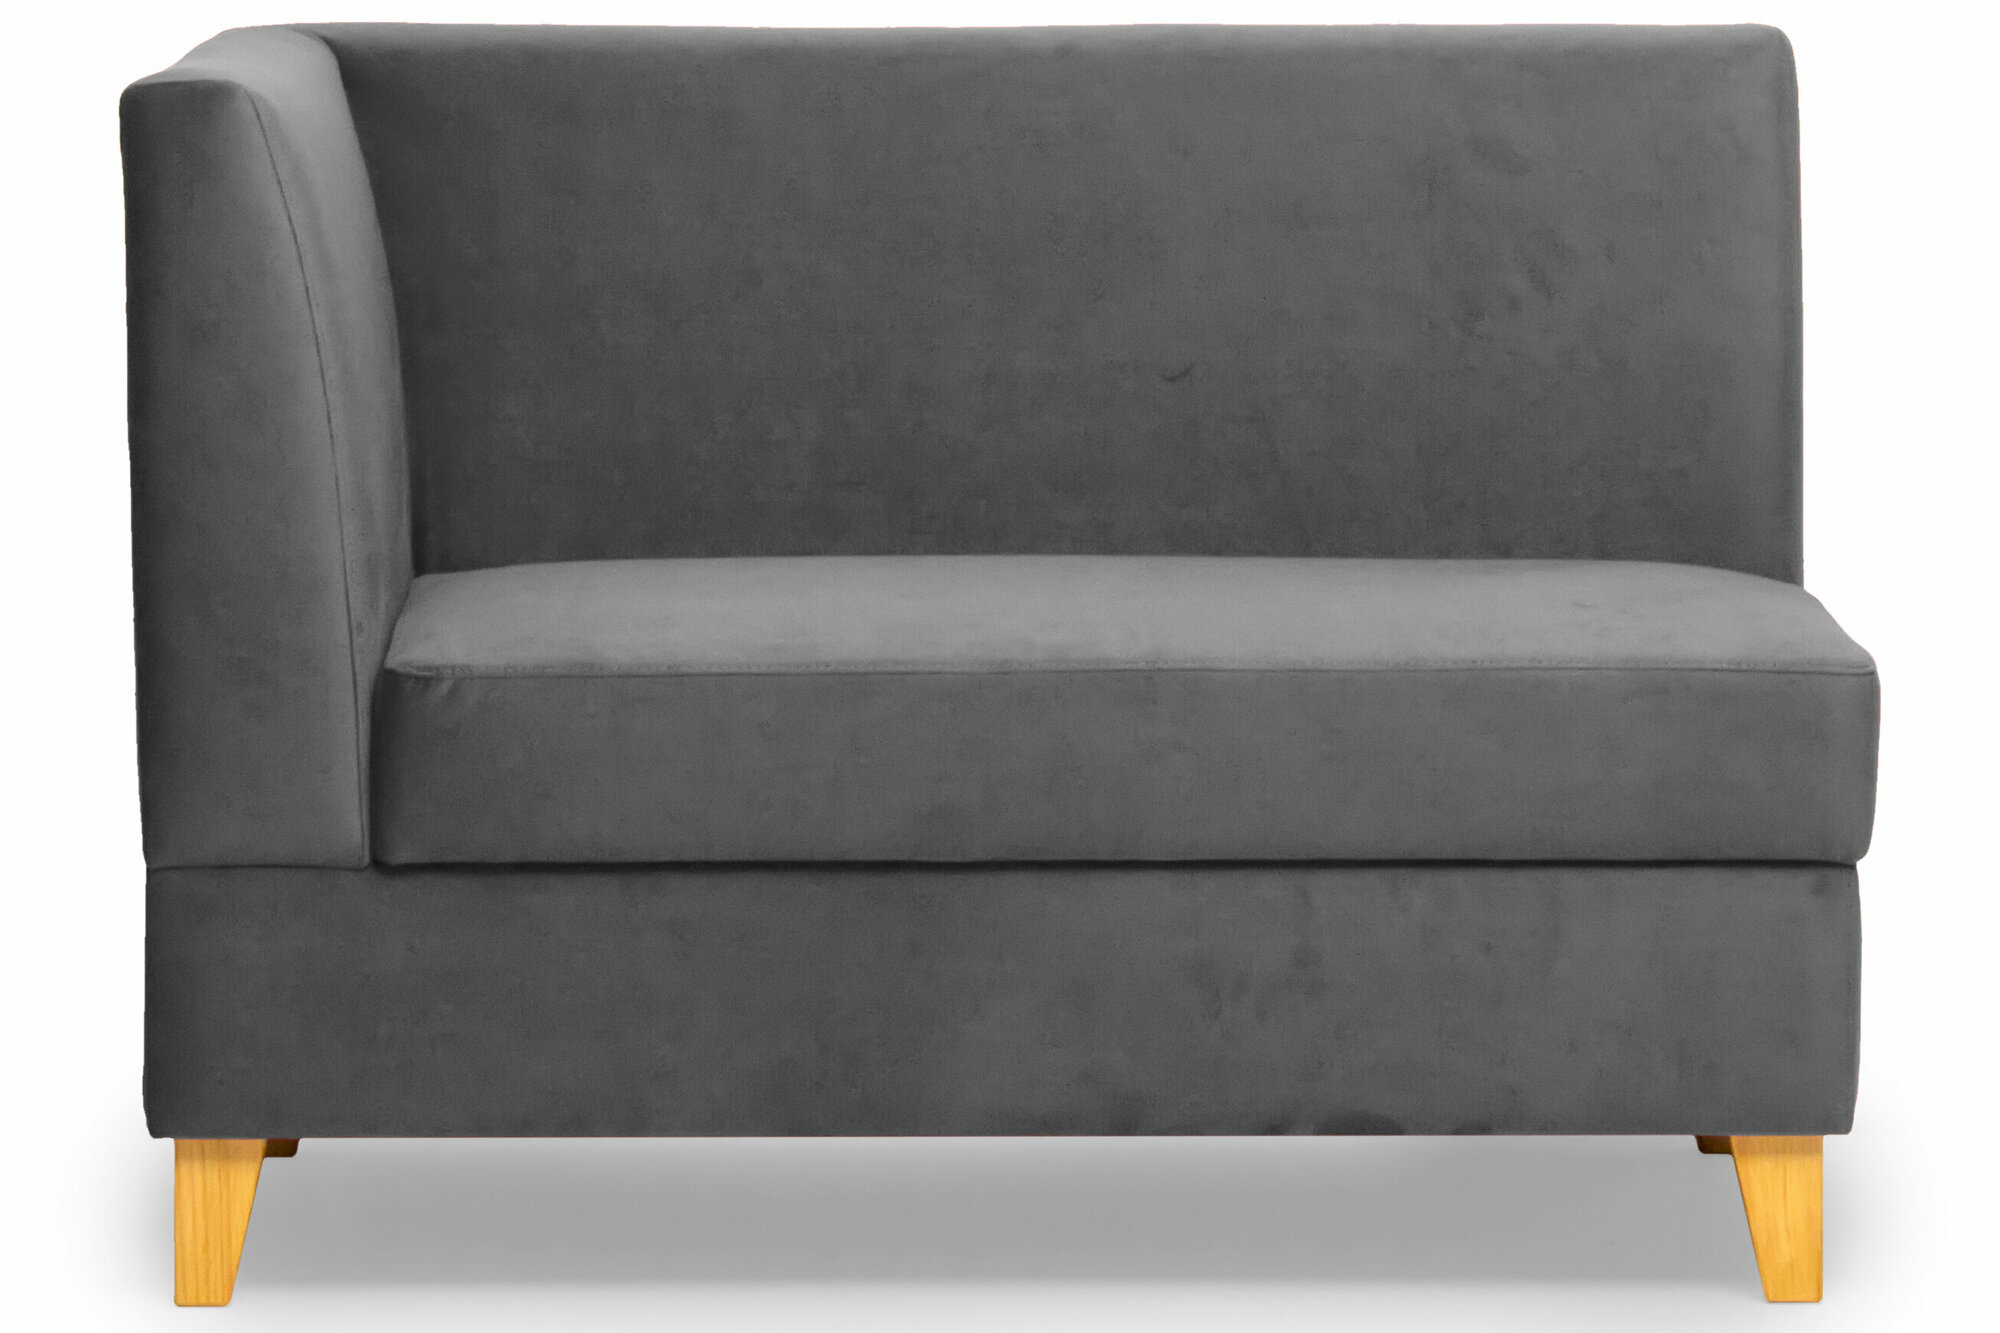 Прямой диван для кухни Норман 90 см с боковой спинкой с ящиком - серый, левый